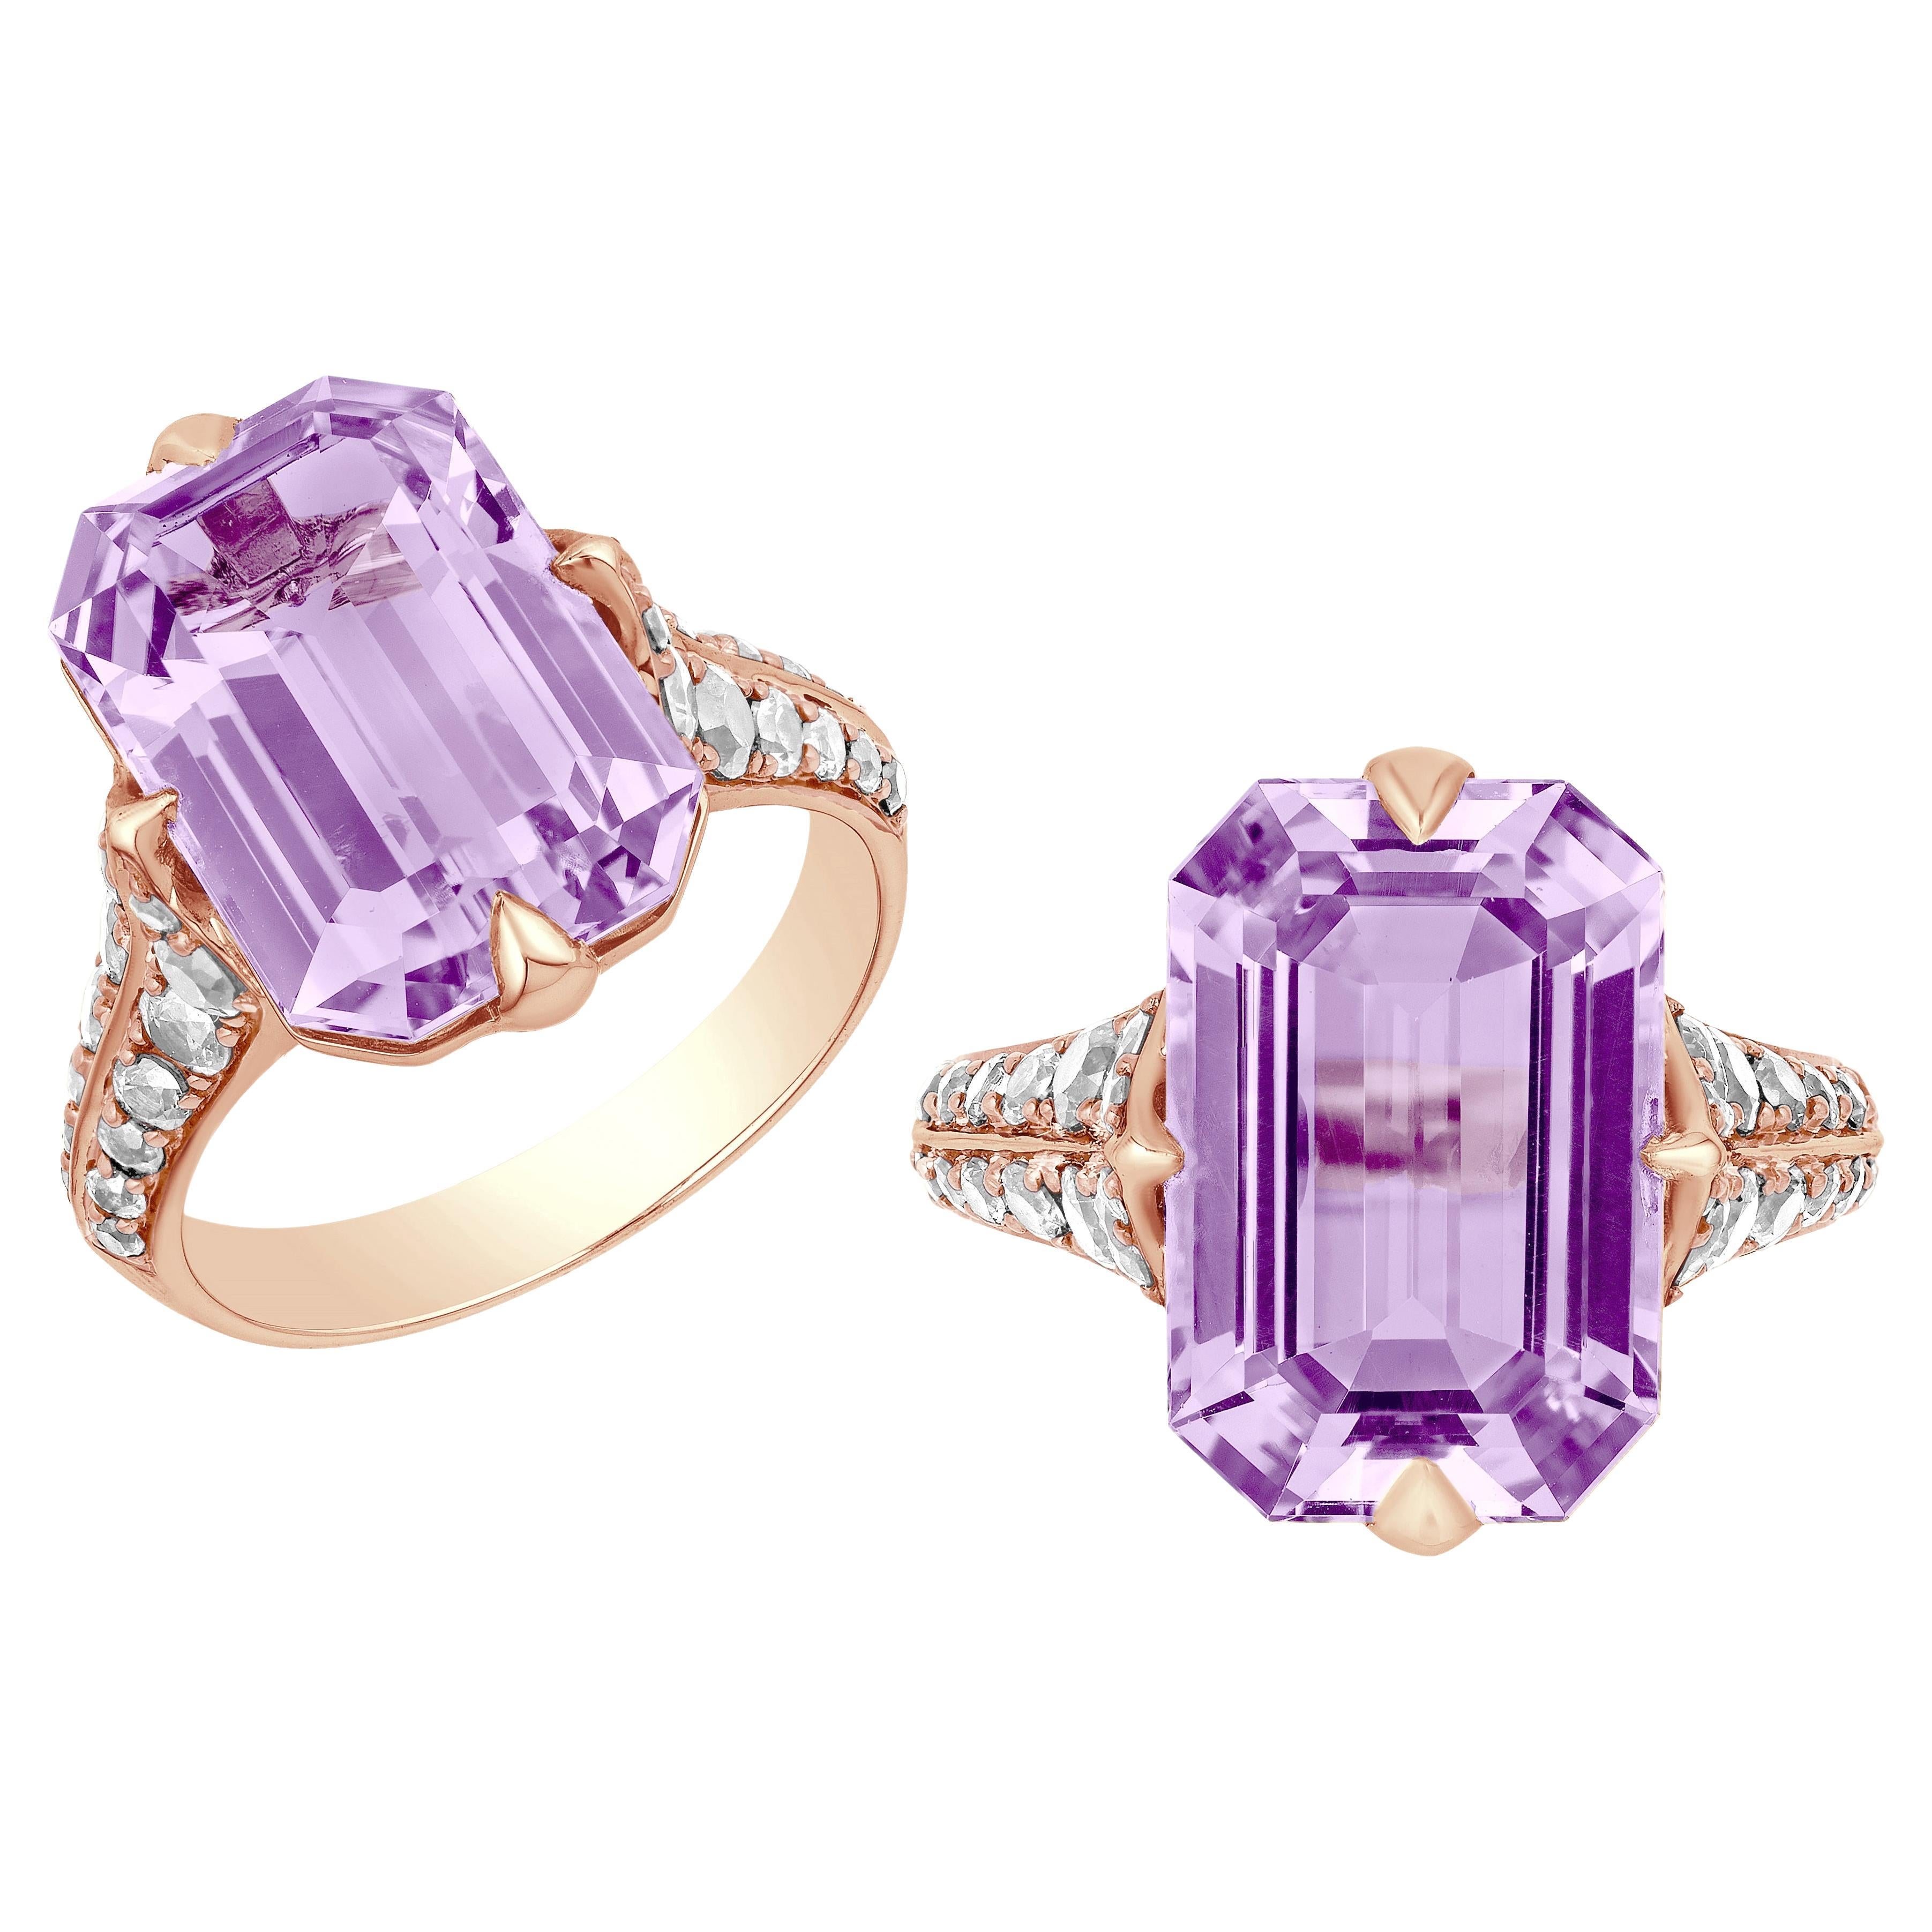 Goshwara Lavender Amethyst Emerald Cut Ring with Diamonds